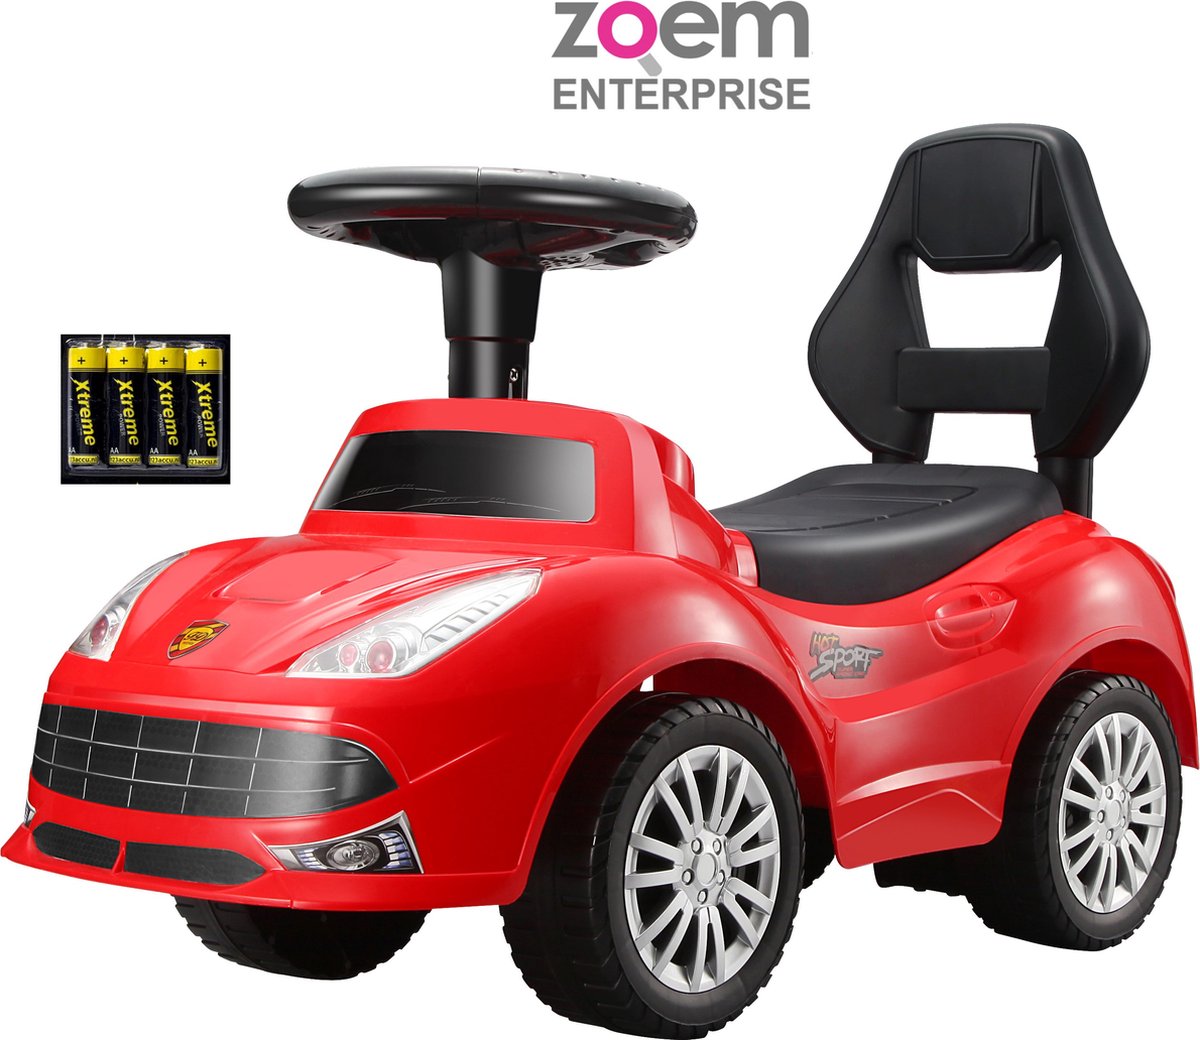 Zoem - Loopauto – Incl batterijen - Race – Ferrari rood – Verlichting – Claxon – Muziek – Stuur - Loopwagen – Speelgoed – Jongens – Meisjes - Cadeau - Verjaardag - Kado - Zoem enterprise